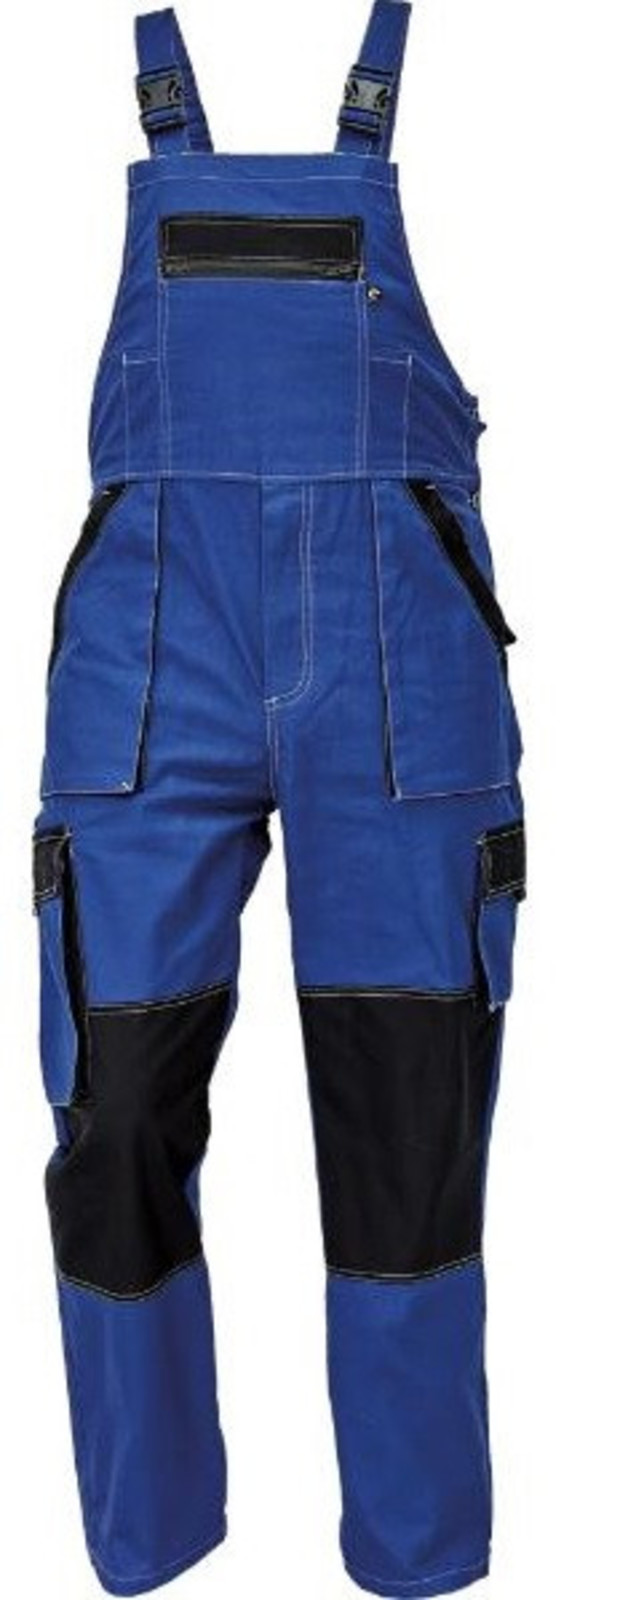 Tenšie bavlnené montérky na traky Max Summer - veľkosť: 56, farba: modrá/čierna